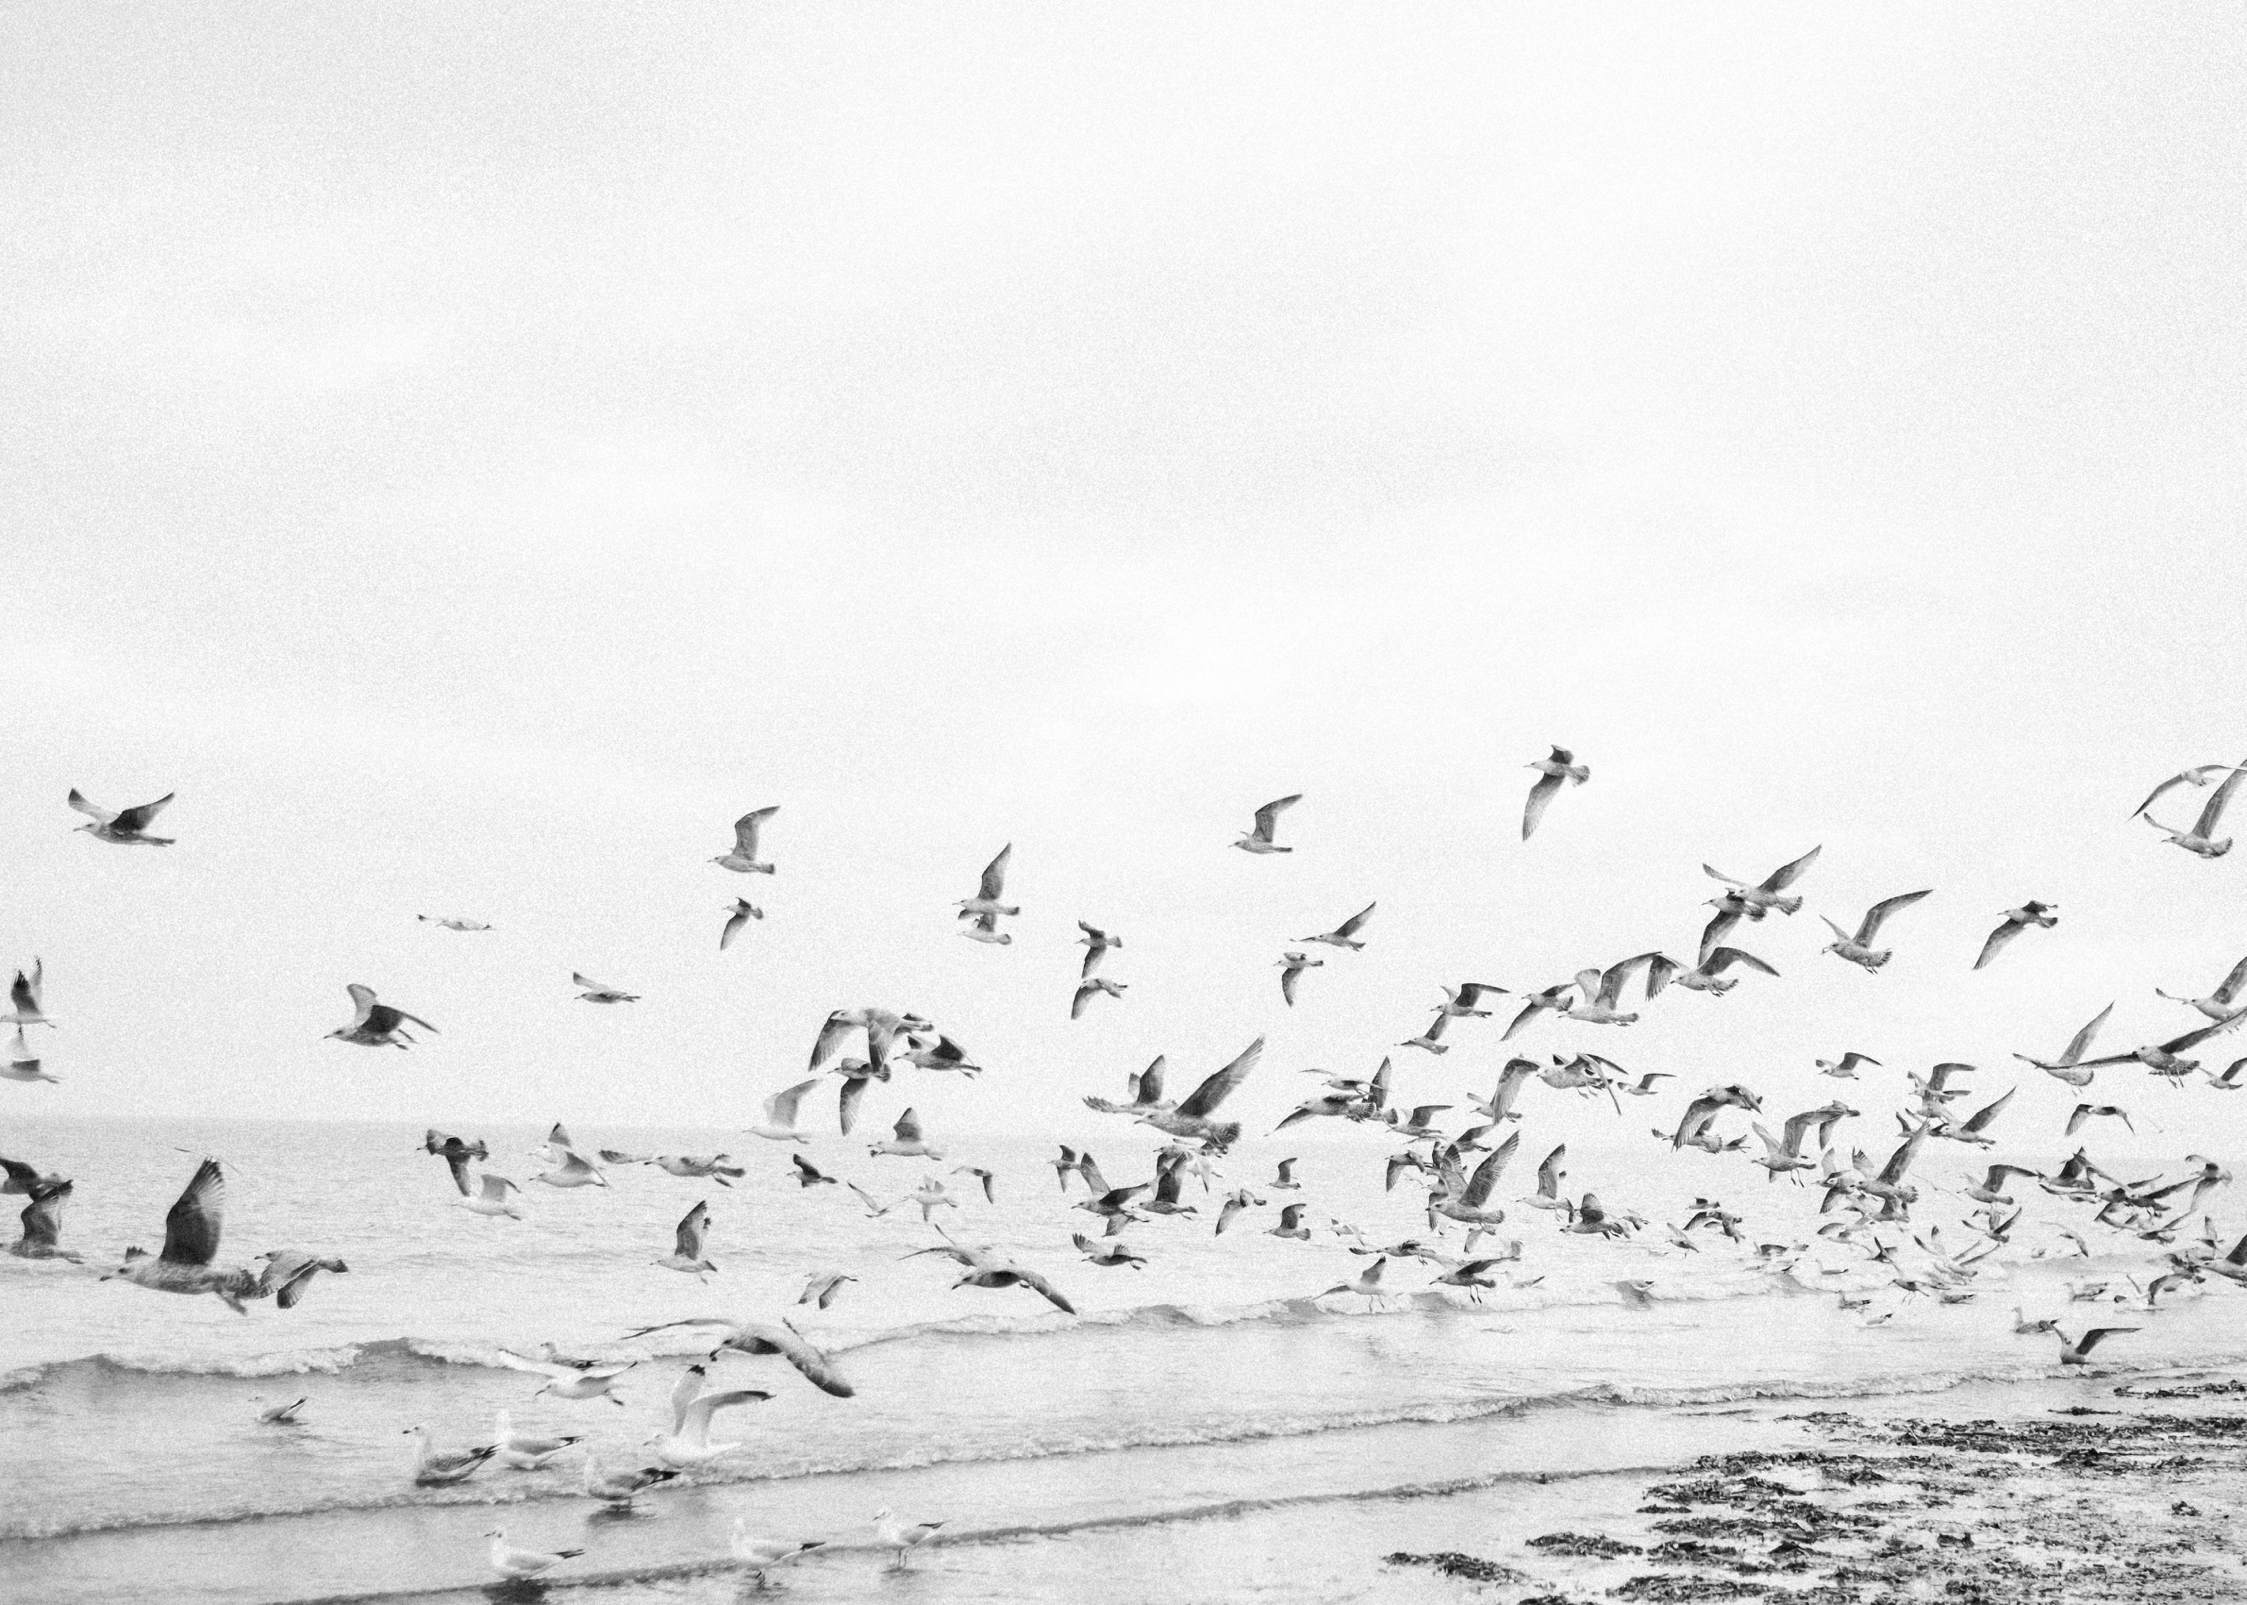 Fine art wedding photographer Editorial beach shoot - Seagulls at the ocean